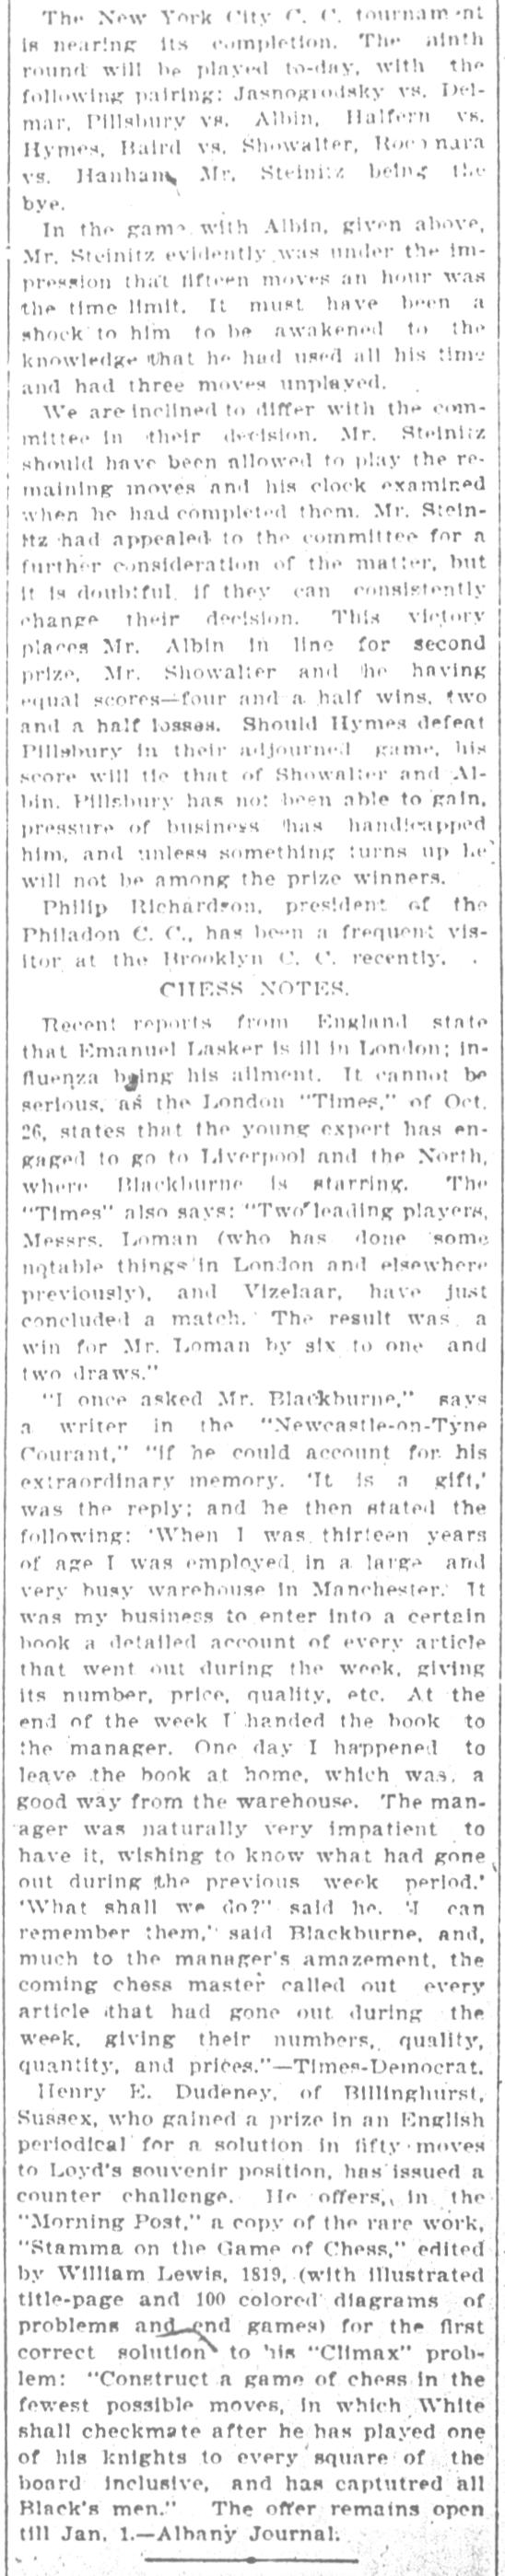 1894.11.10-04 Brooklyn Daily Standard-Union.jpg